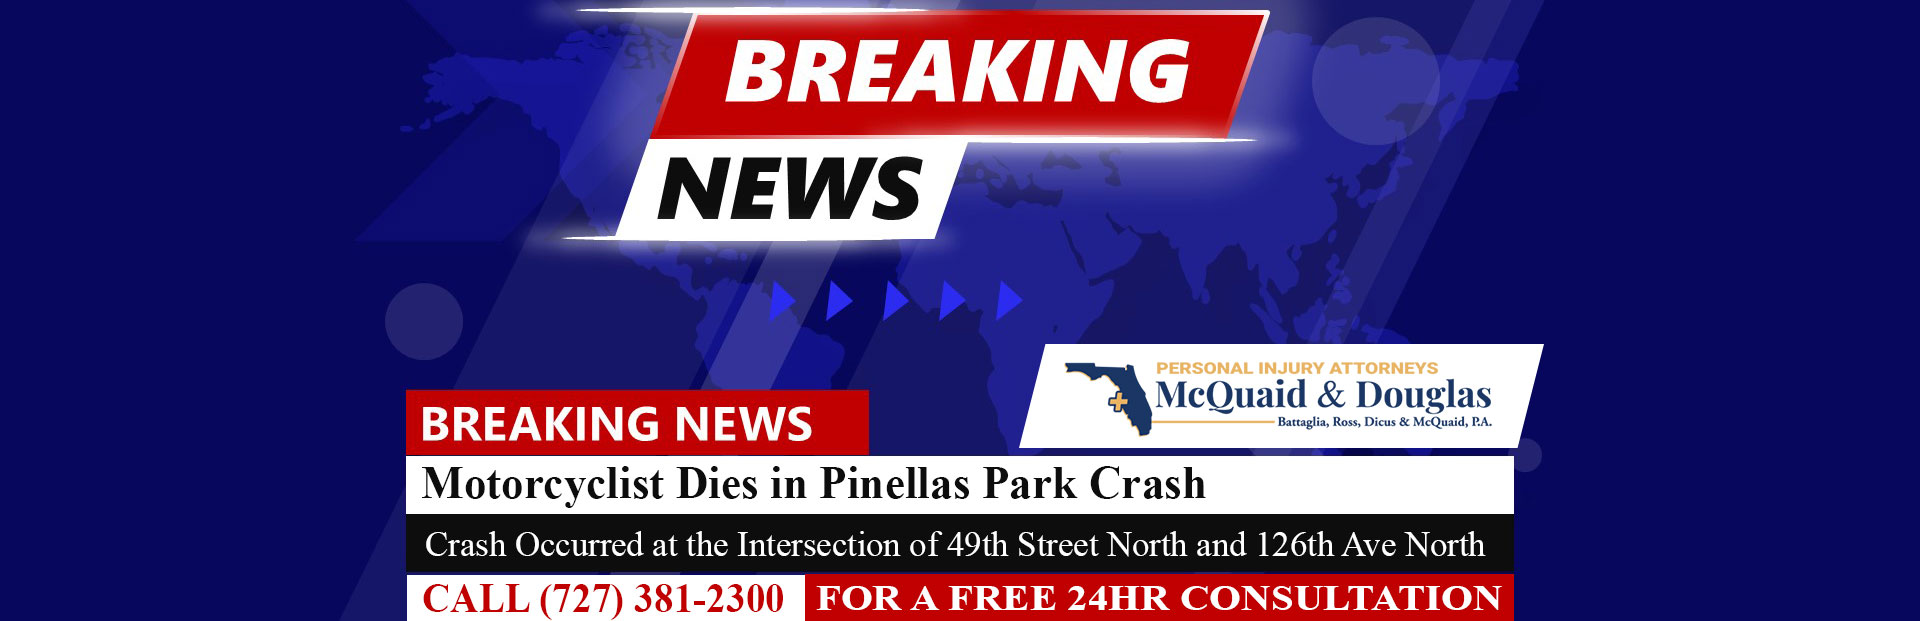 [5-2-22] Motorcyclist dies in Pinellas Park crash